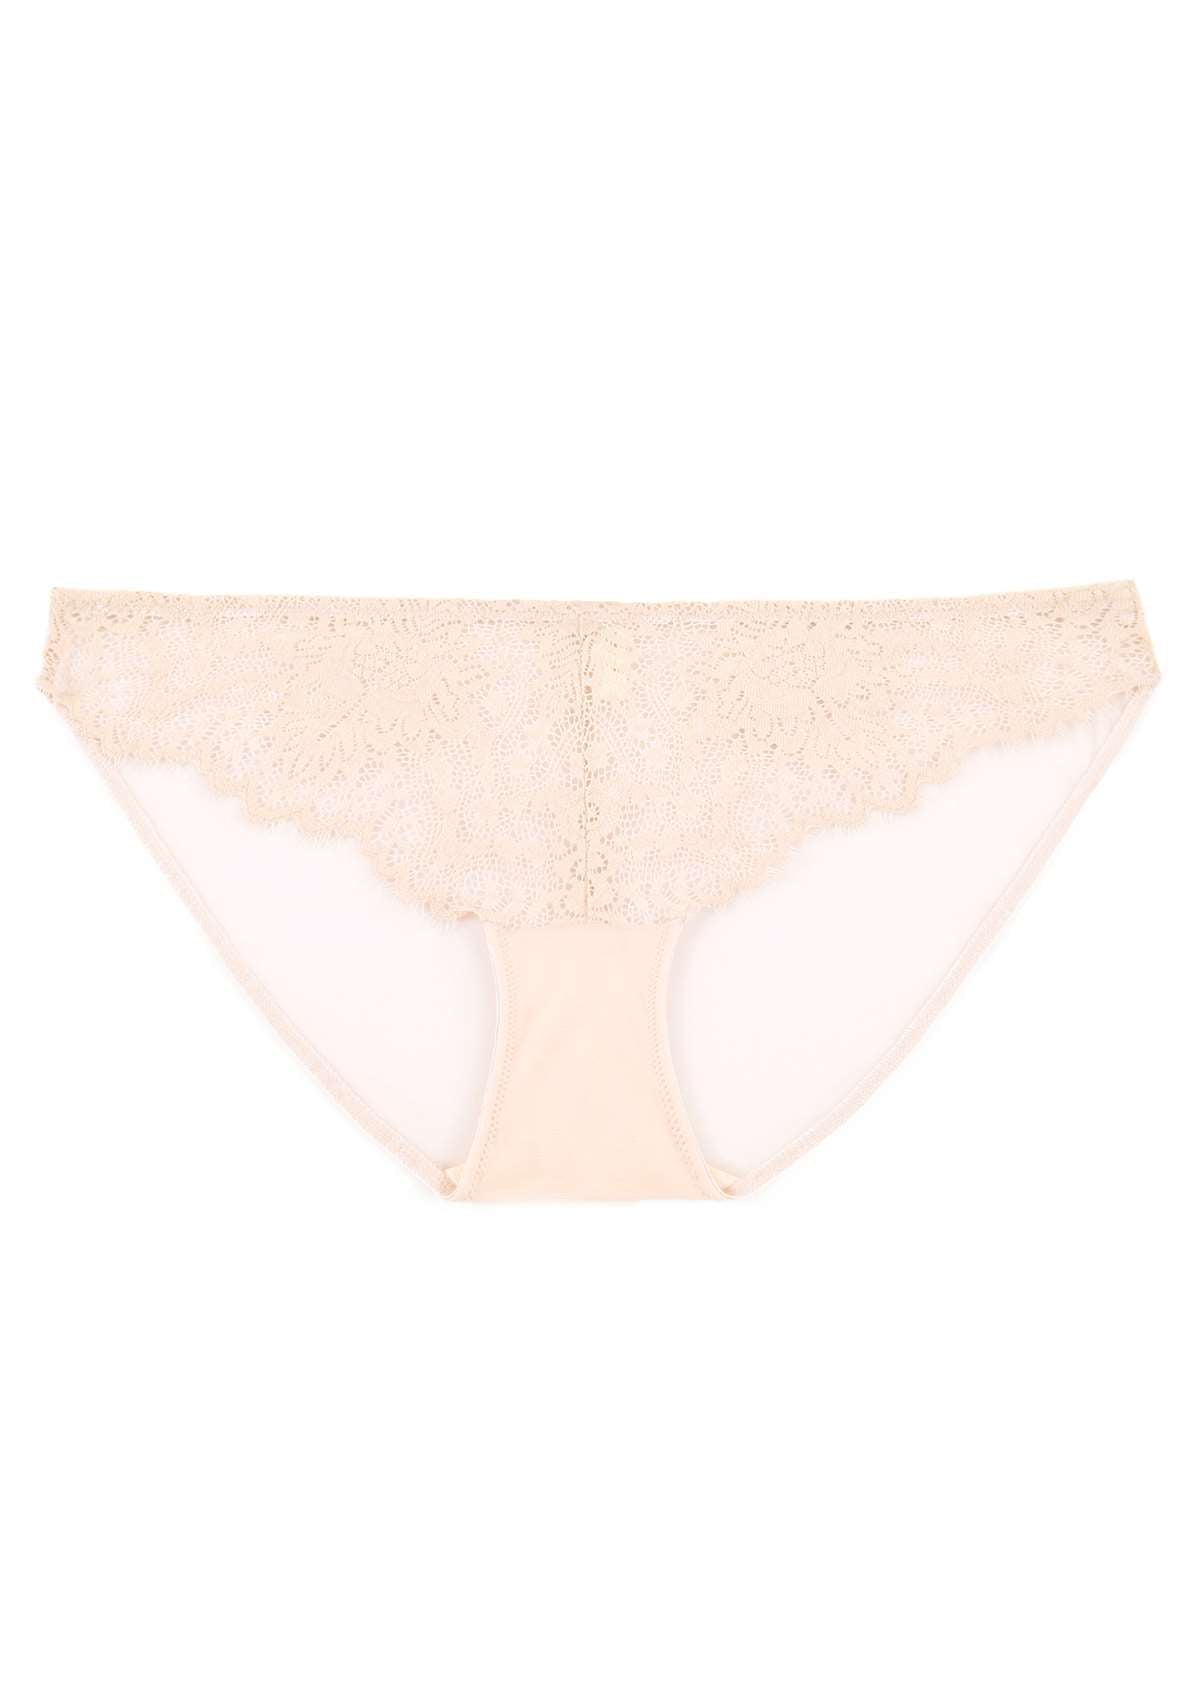 HSIA Sunflower Exquisite Pink Lace Bikini Underwear - M / High-Rise Brief / Pink